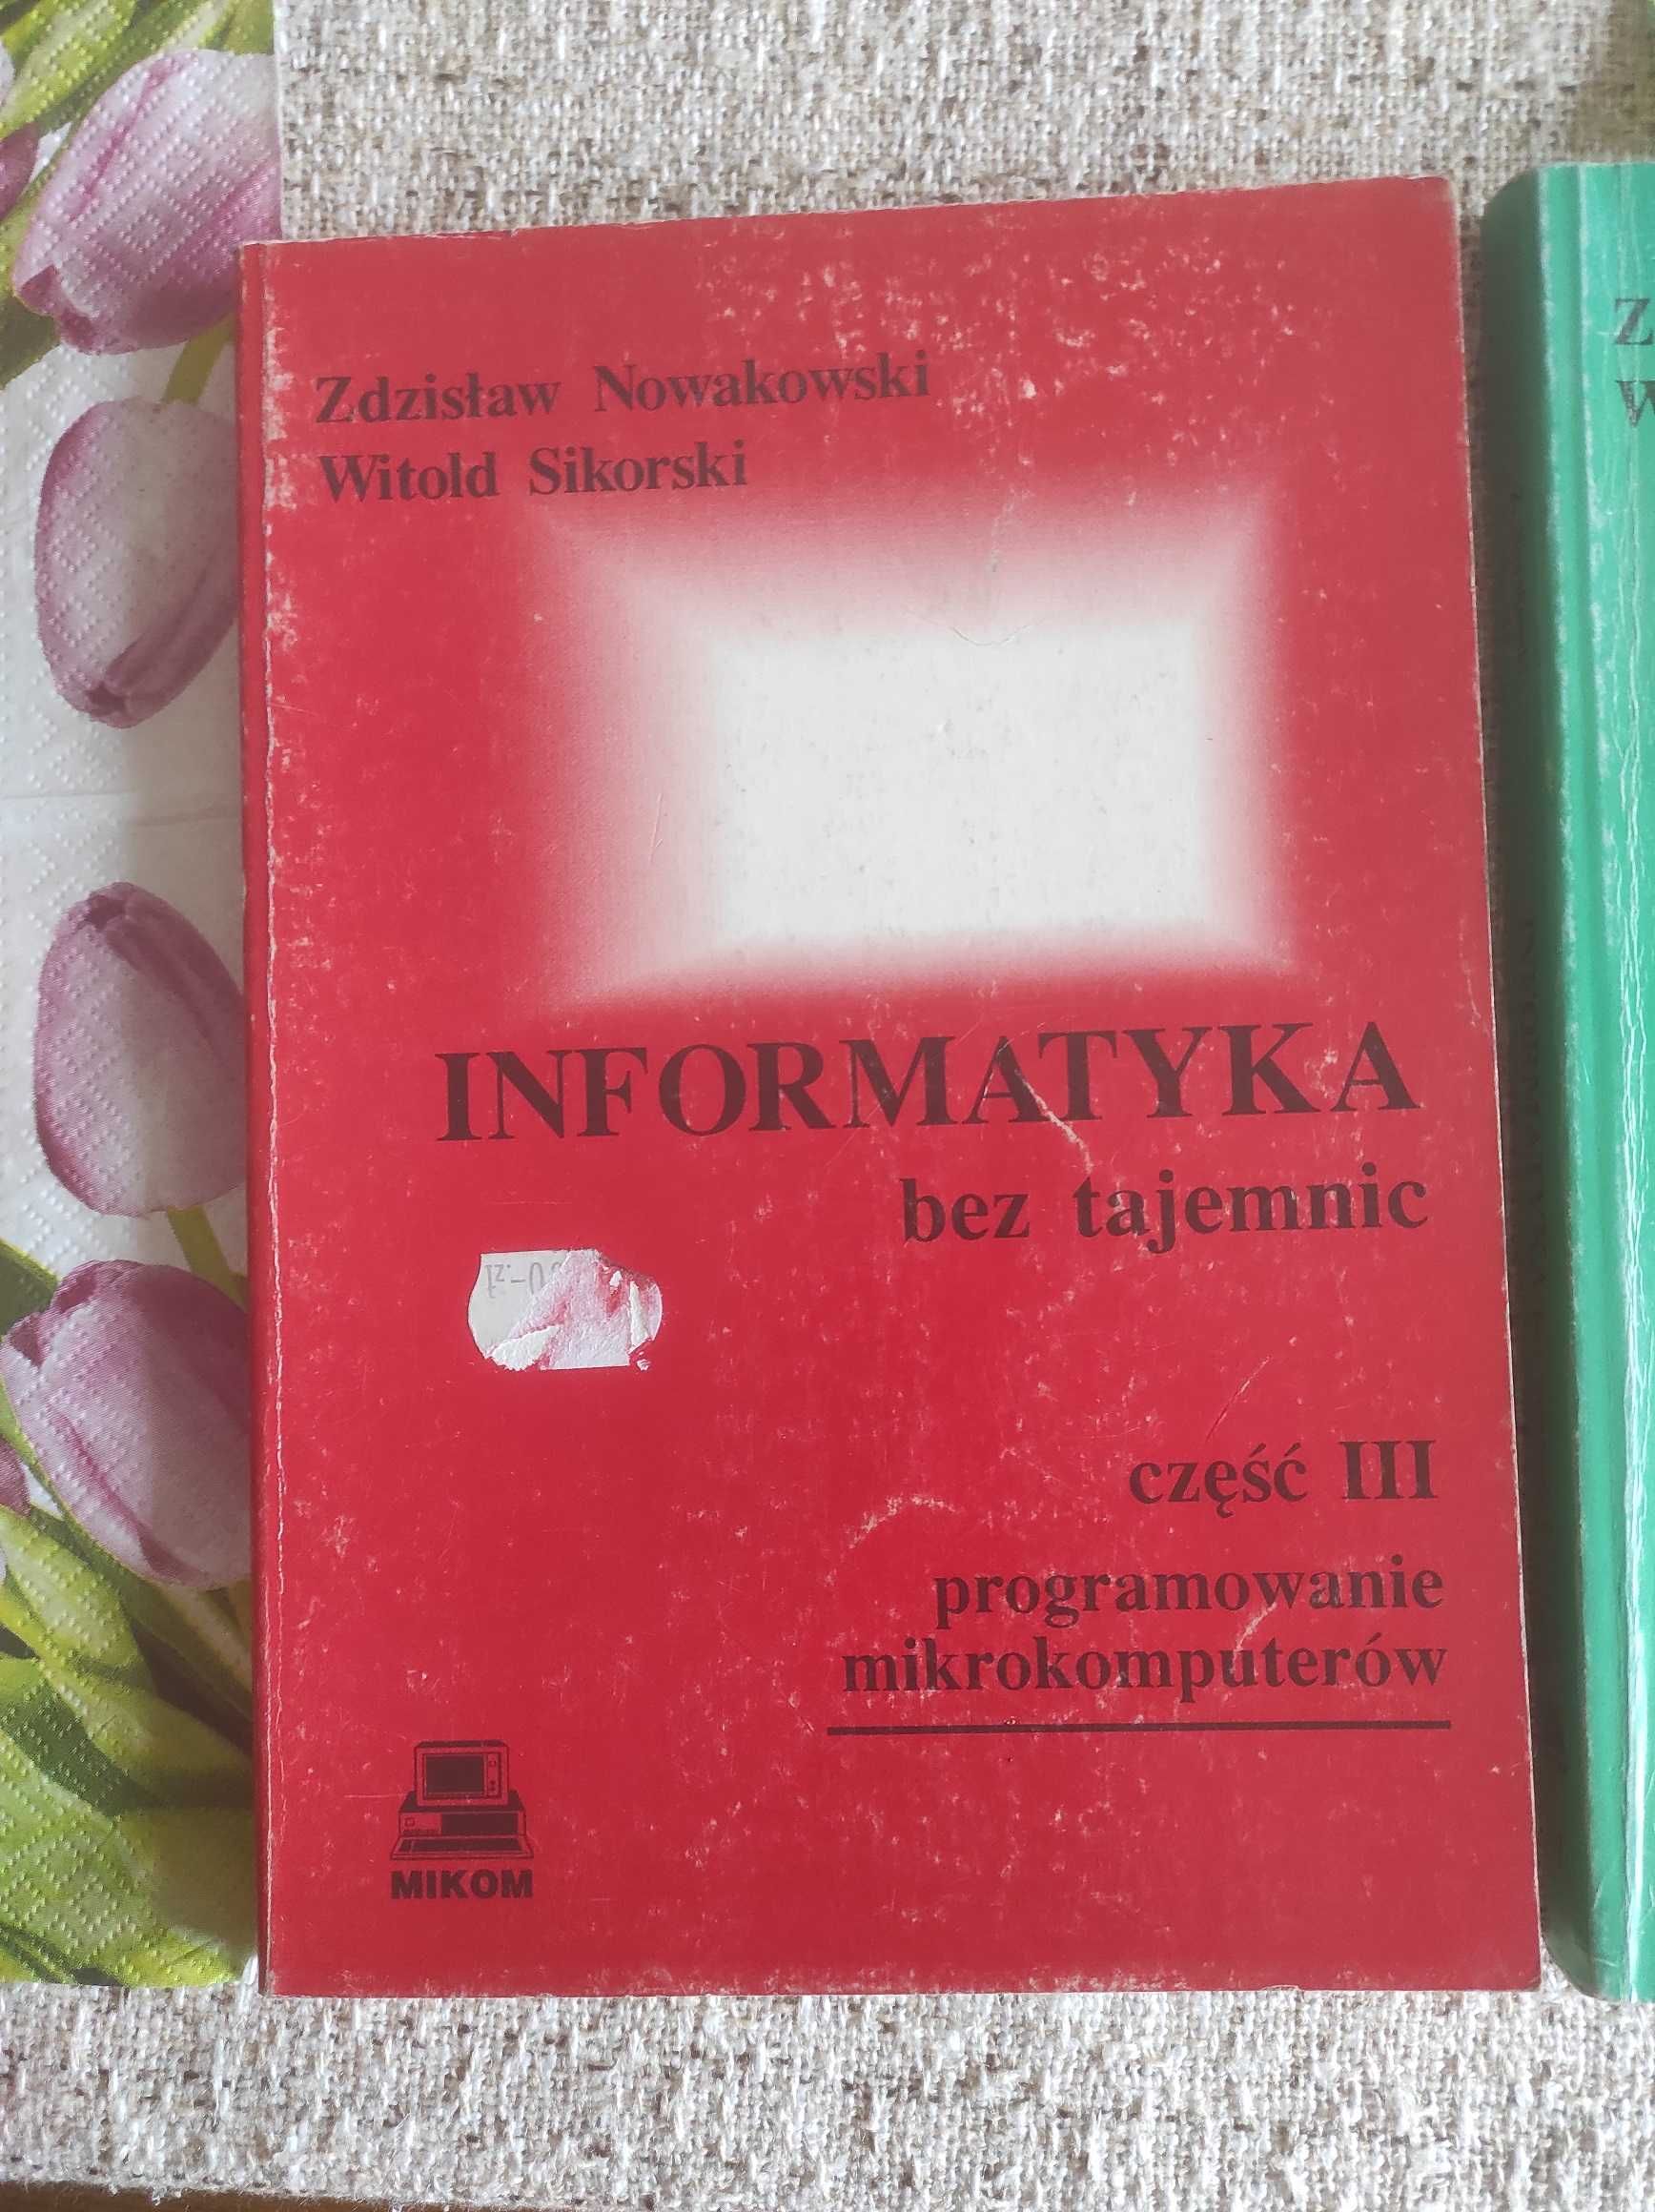 Informatyka bez tajemnic. Z. Nowakowski, W. Sikorski